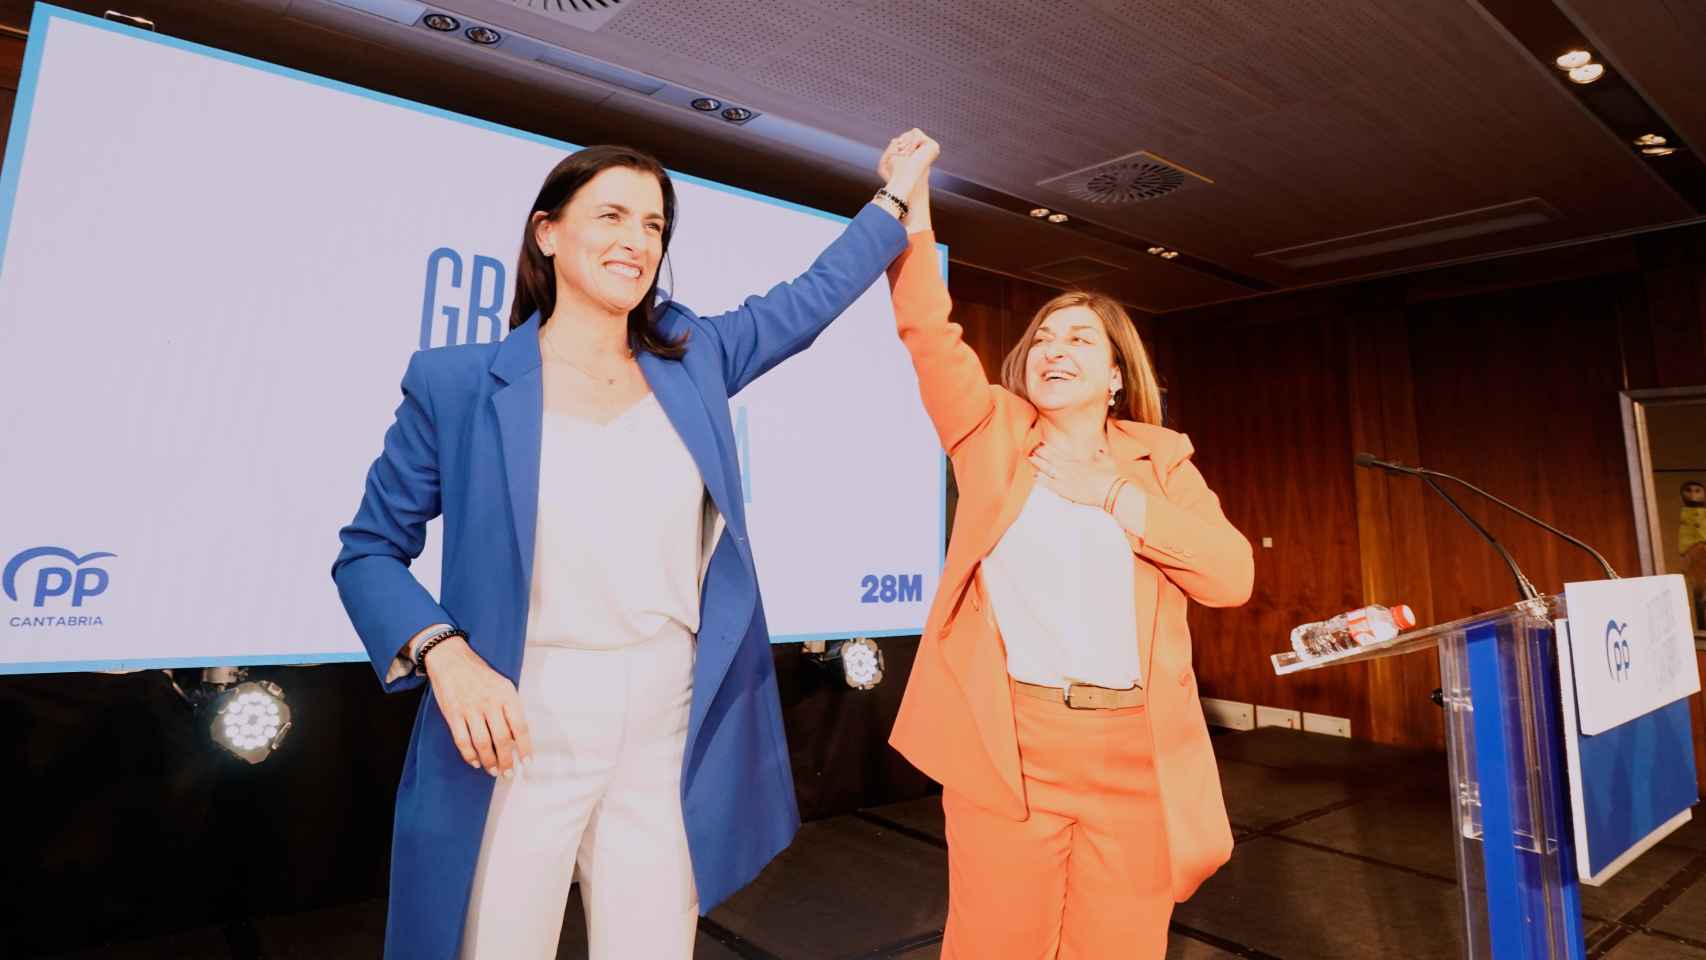 La candidata del PP a la alcaldía de Santander, Gema Igual